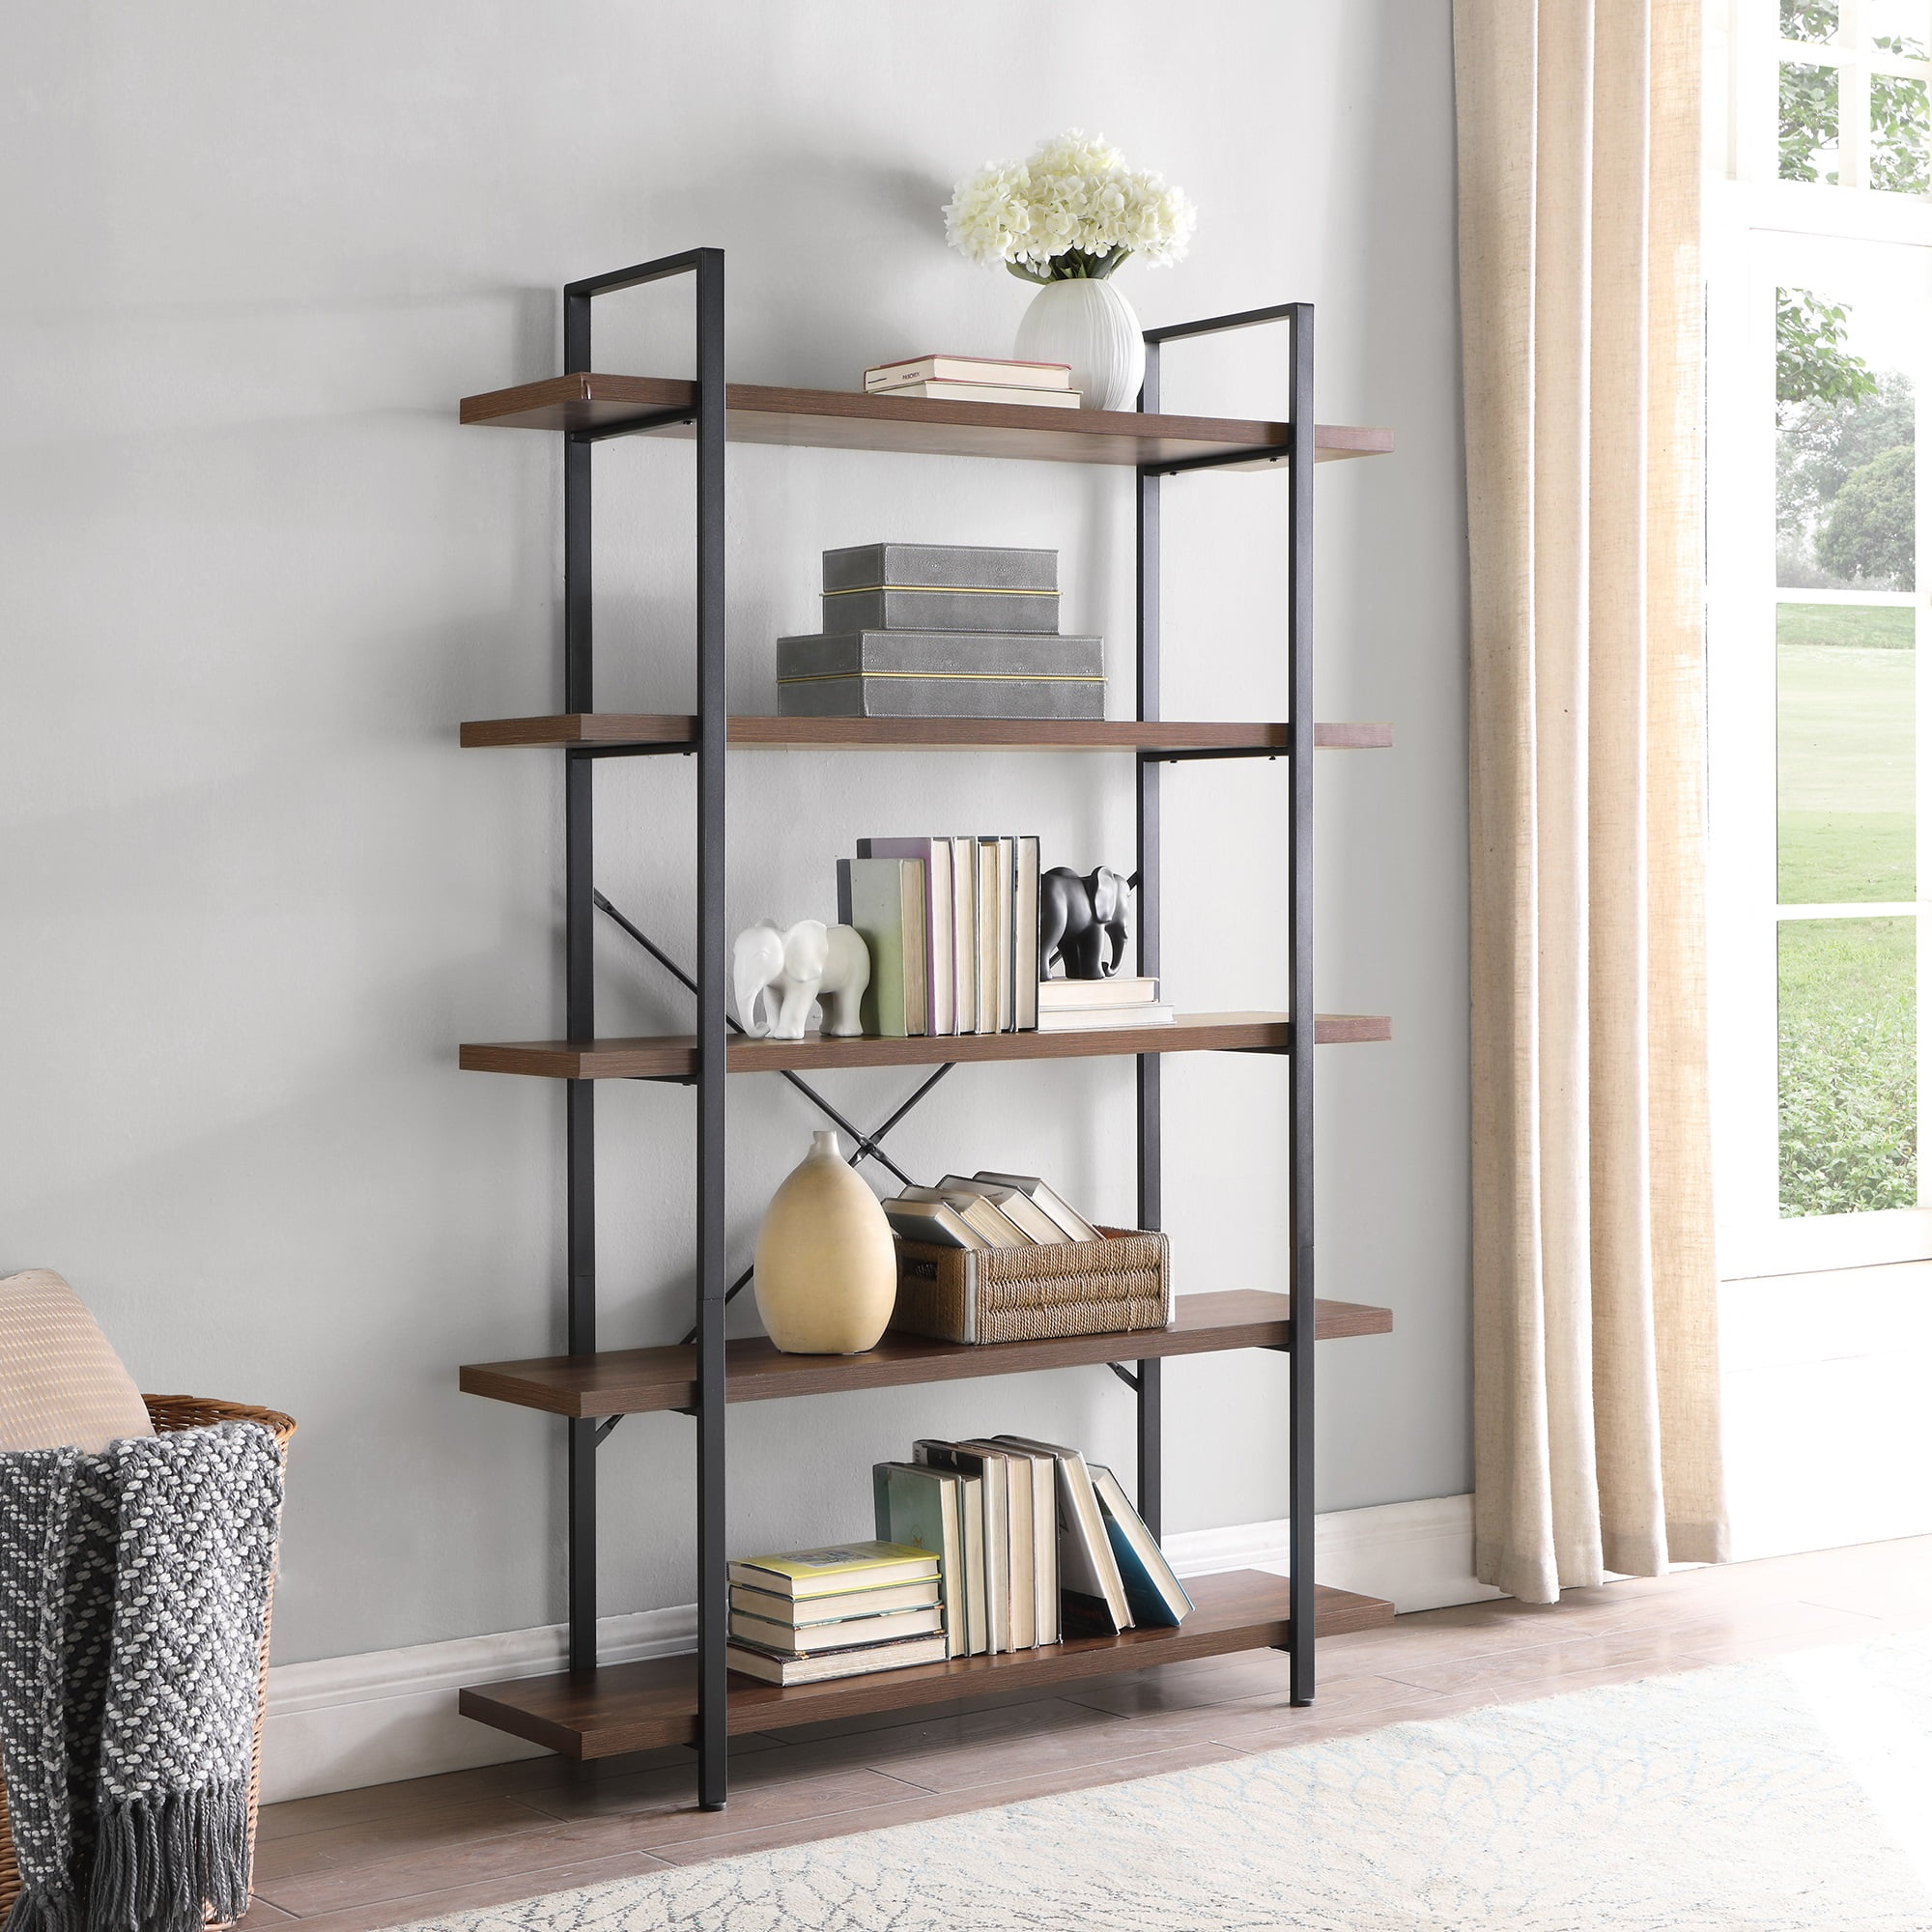 Belleze 5 Tier Industrial Bookshelf, Etagere Bookcase Wooden